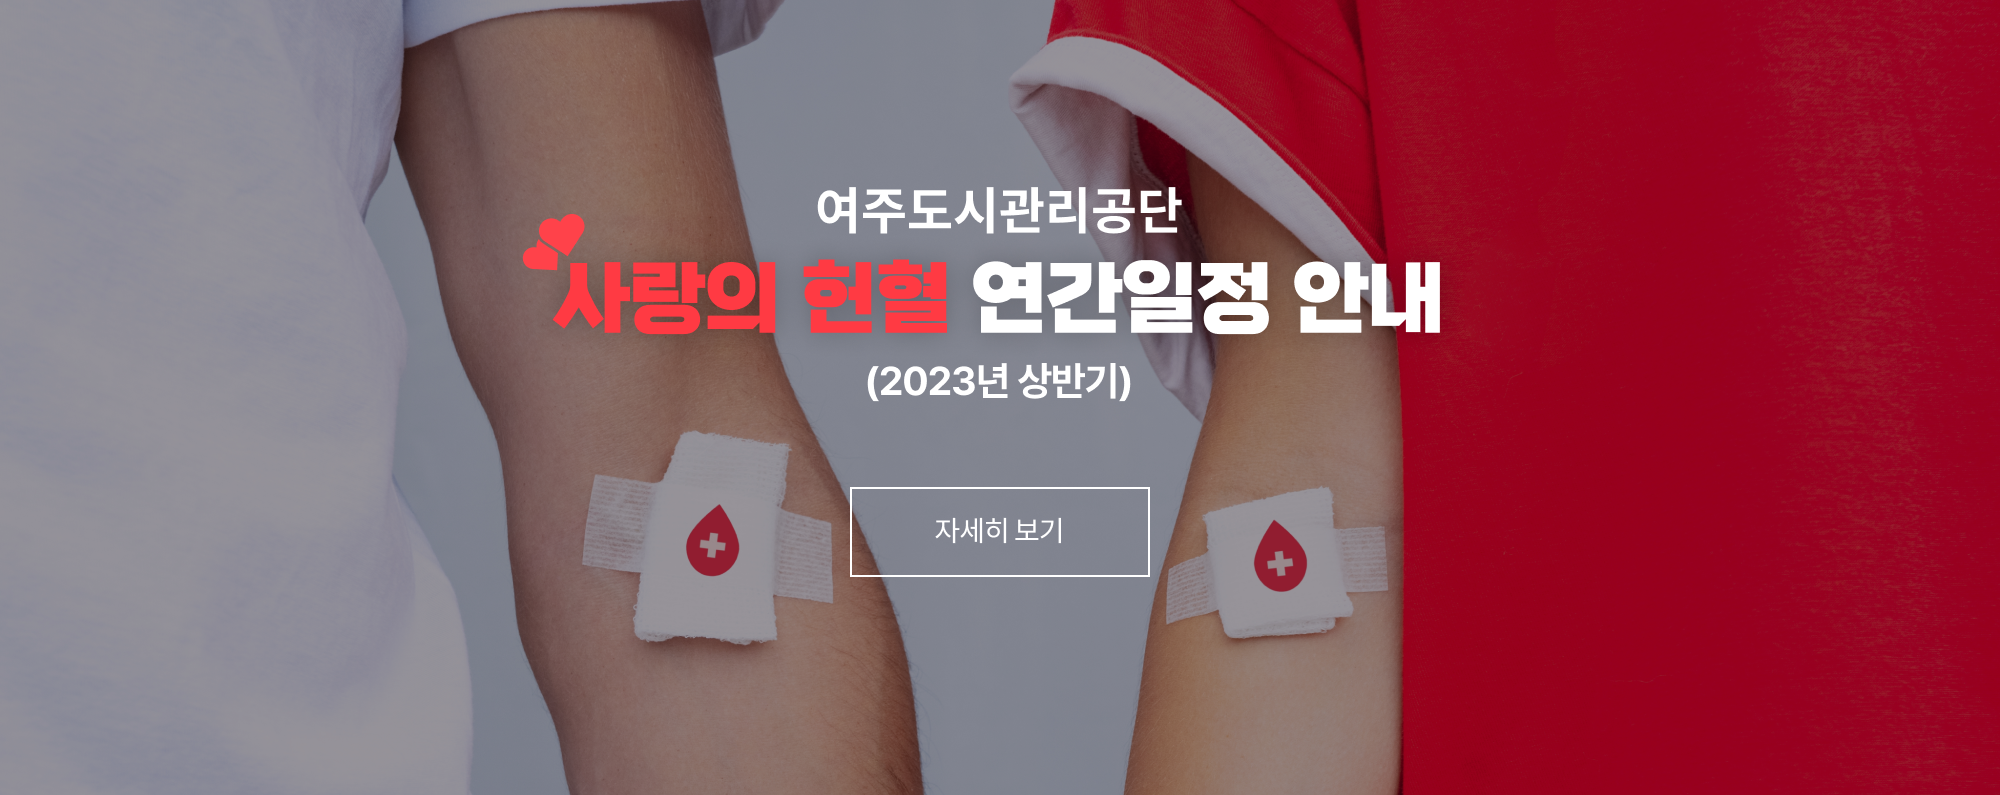 여주도시관리공단 사랑의 헌혈 연간일정 안내(2023년 상반기) 자세히보기